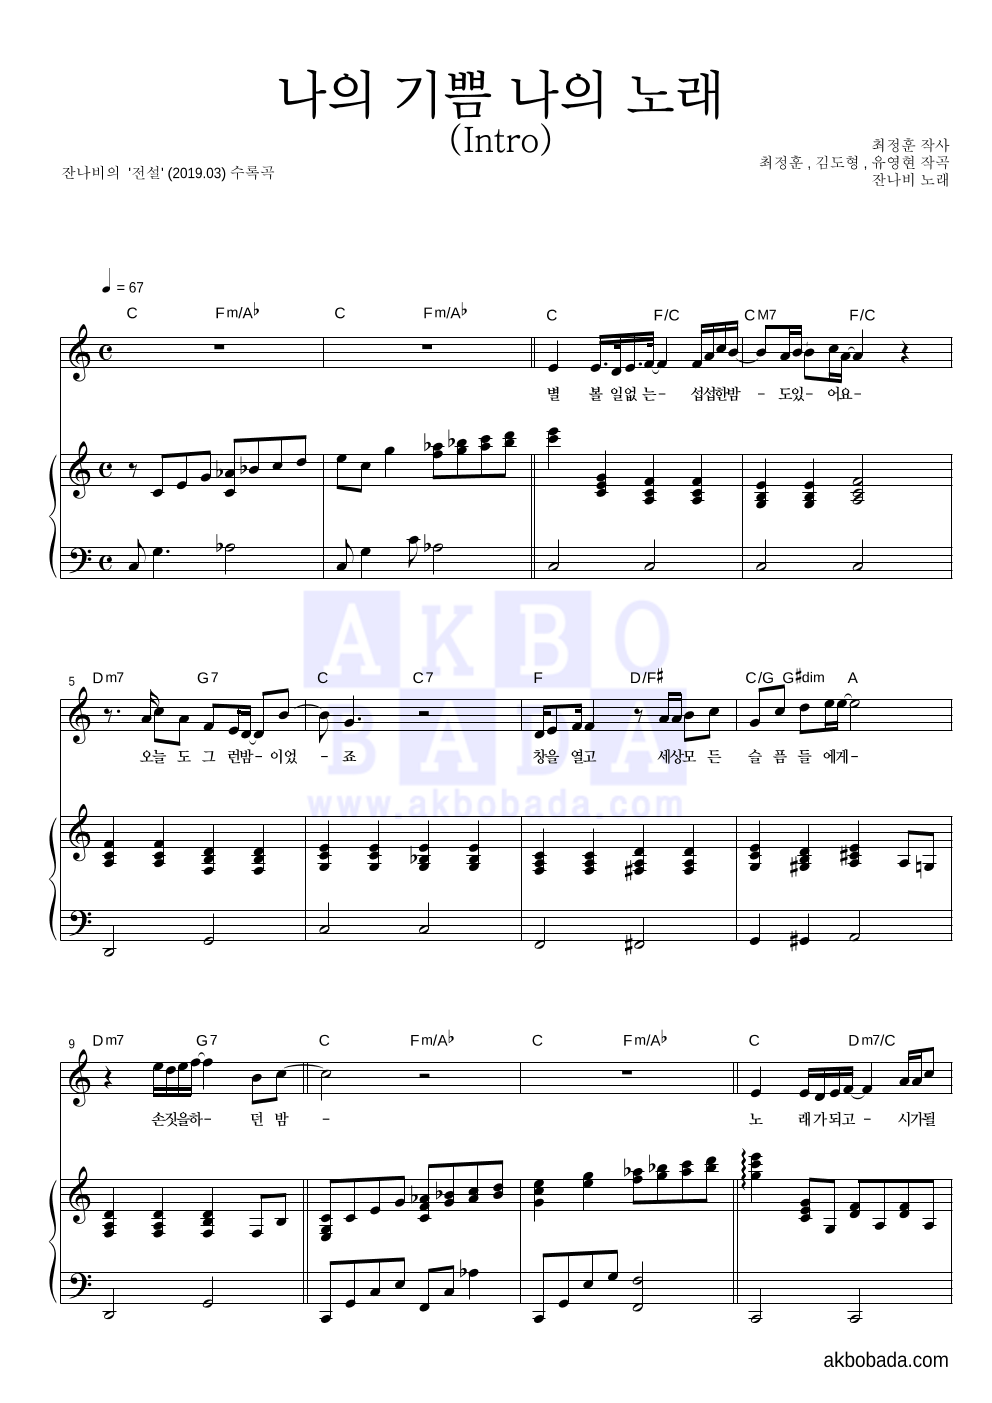 잔나비 - 나의 기쁨 나의 노래 (Intro) 피아노 3단 악보 